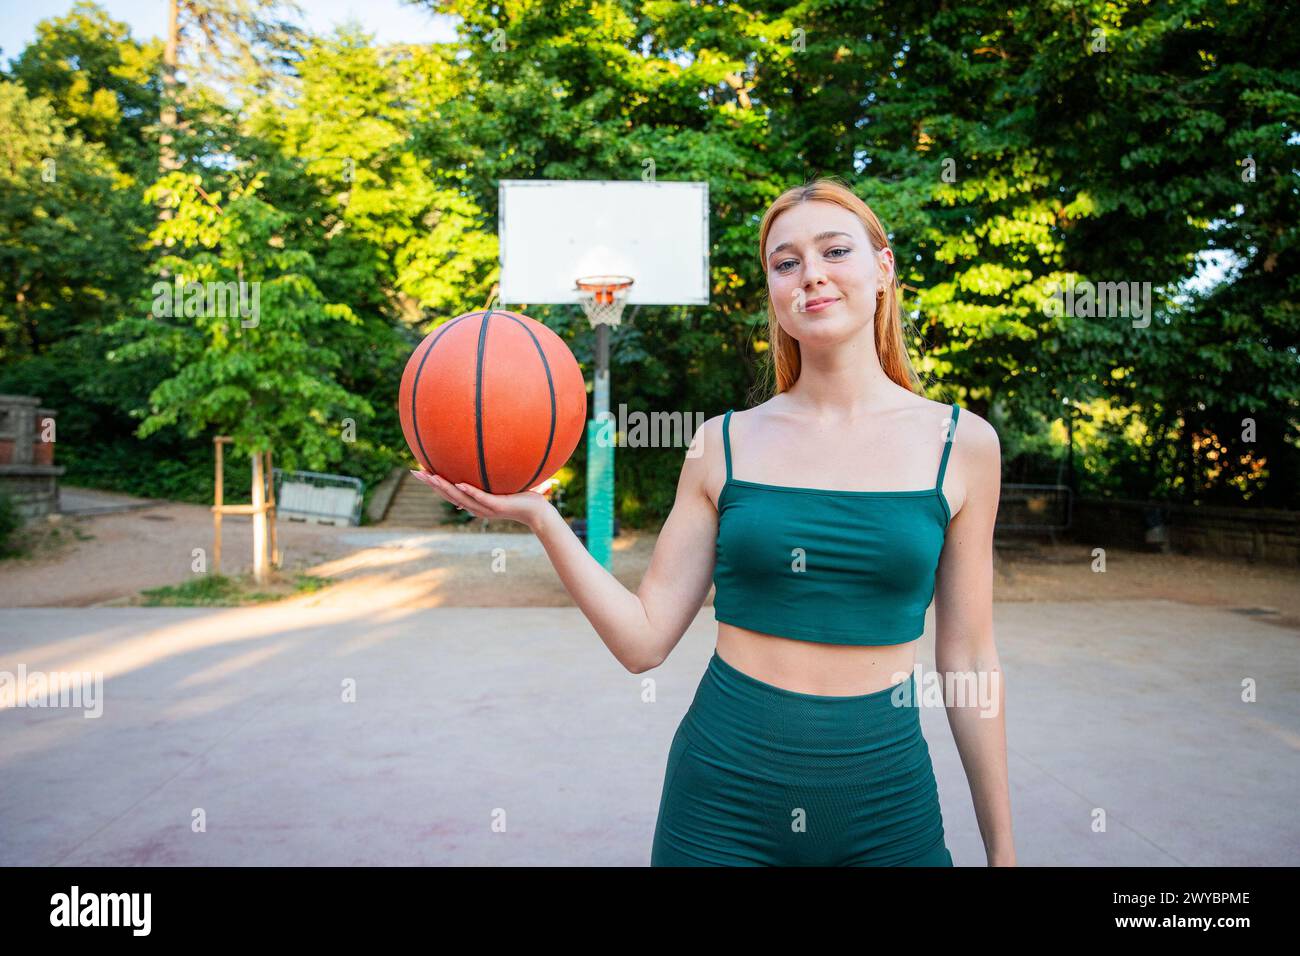 Una donna sta tenendo un basket in un parco. Il parco è circondato da alberi e dispone di un campo da pallacanestro. La donna sorride e le piace l'hersel Foto Stock